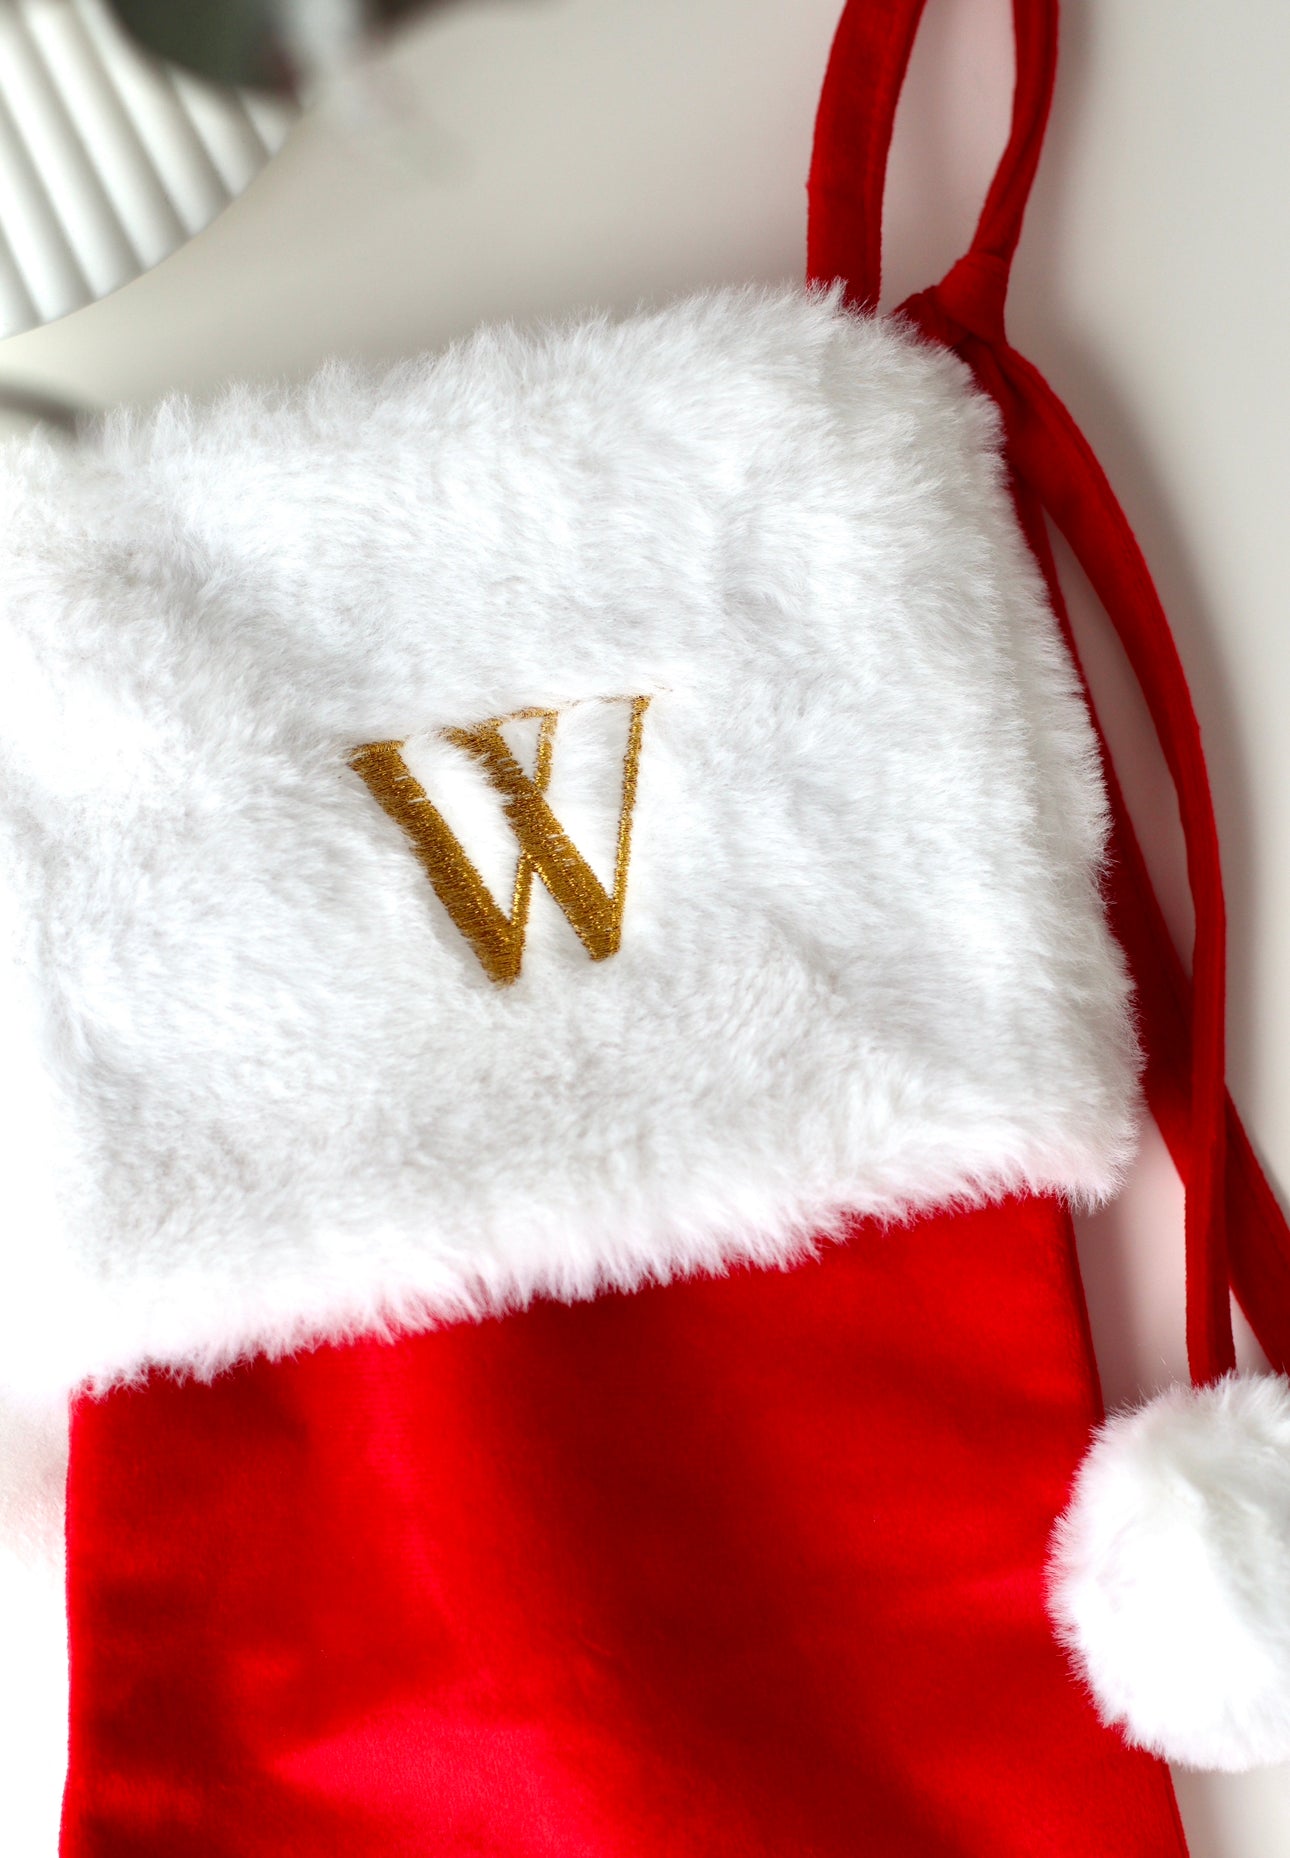 Velvet Personalised Christmas Stockings - Velvet stocking with plush white trim